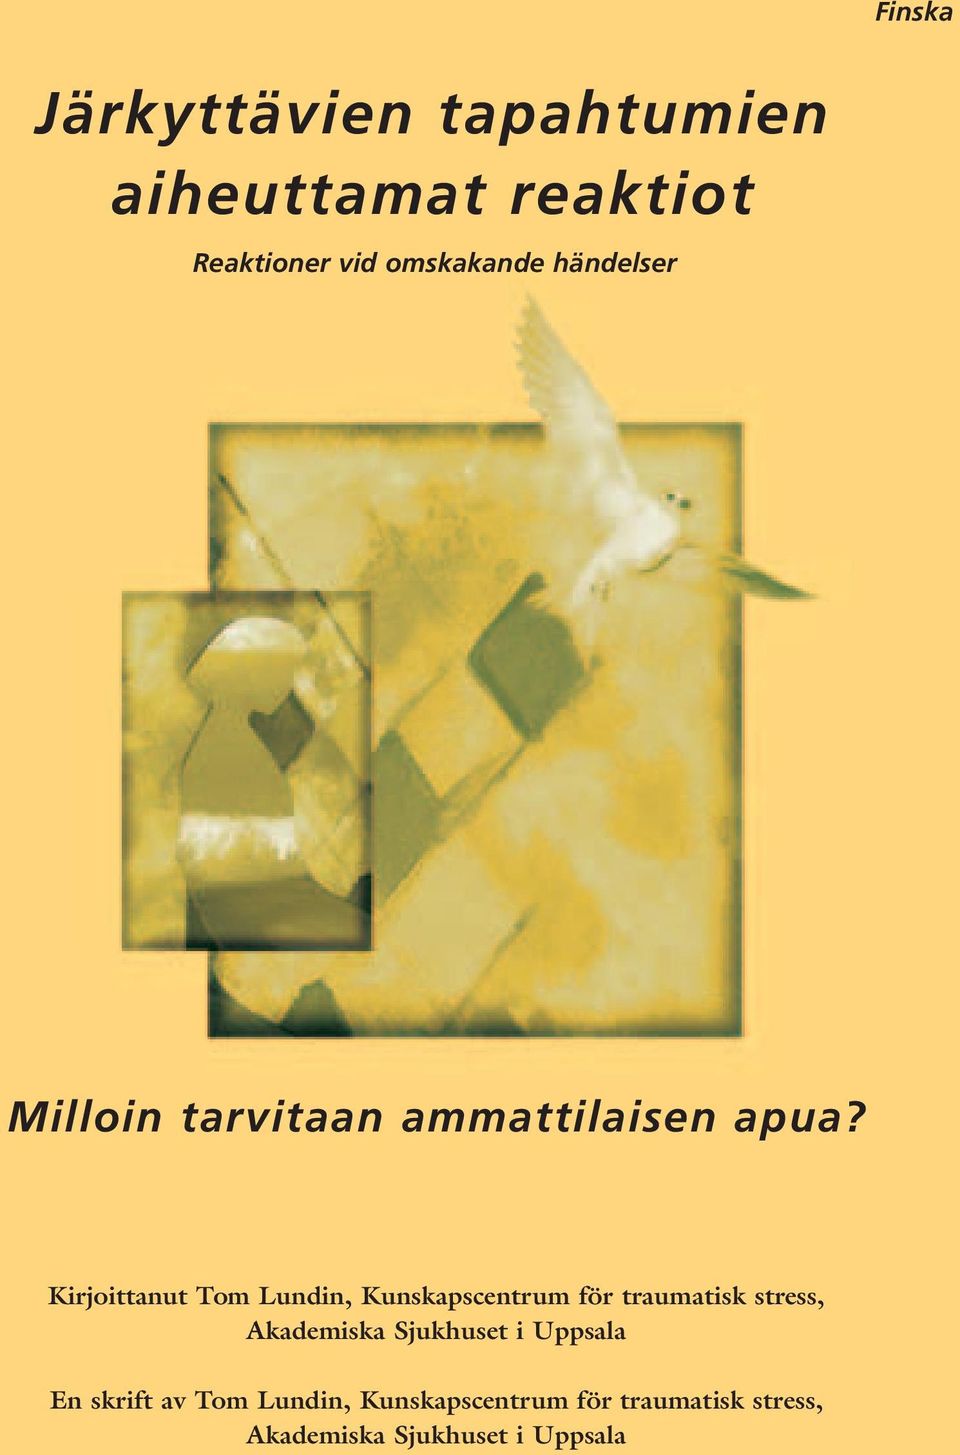 Kirjoittanut Tom Lundin, Kunskapscentrum för traumatisk stress, Akademiska